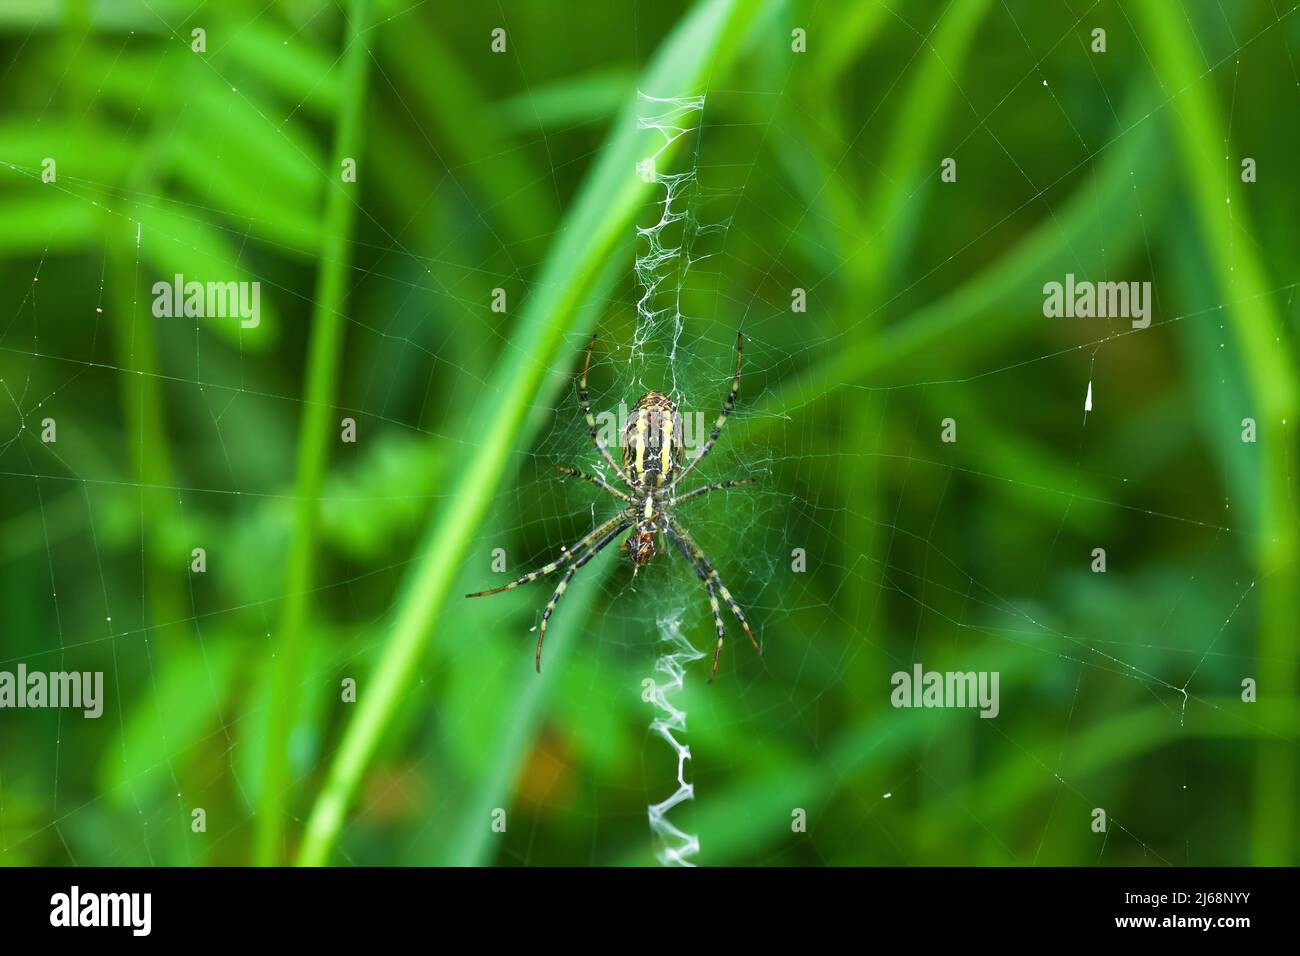 Wespenspinne auf Spinnennetz mit stabilimentum. Argiope bruennichi auf dem Netz im Gras. Gestreifte weibliche Arachnid auf Zick-Zack-Spinnennetz durch grünen verschwommenen Hintergrund, Stockfoto